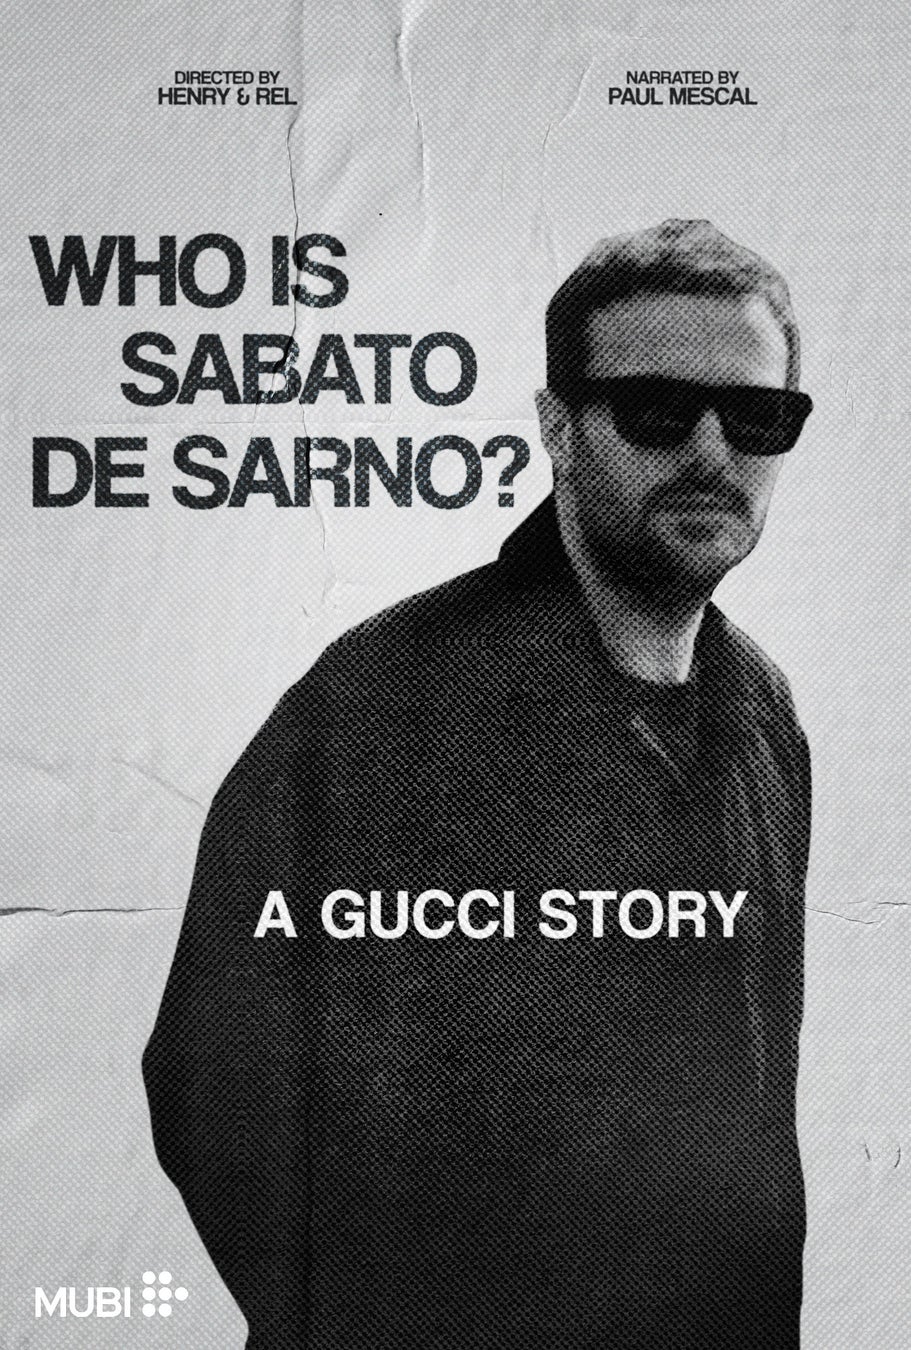 ドキュメンタリー映画『WHO IS SABATO DE SARNO? A GUCCI STORY』を公開